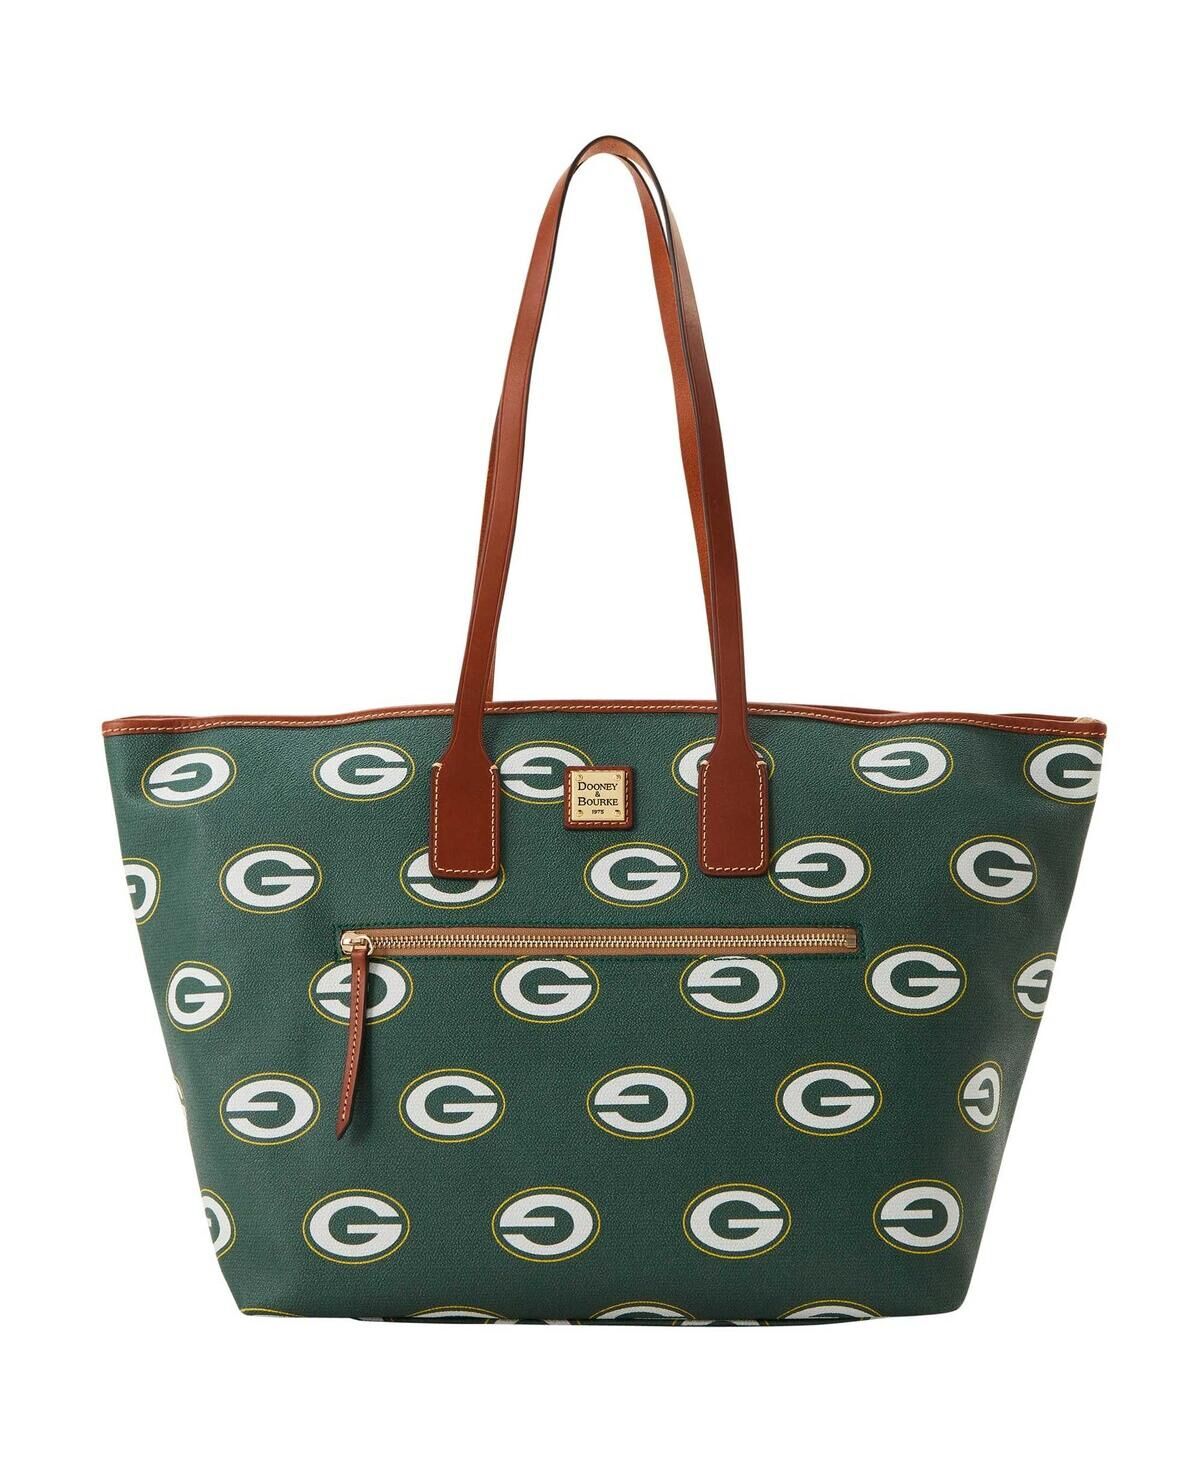 Dooney & Bourke Women's Dooney & Bourke Green Bay Packers Sporty Monogram Large Zip Tote Bag - Green